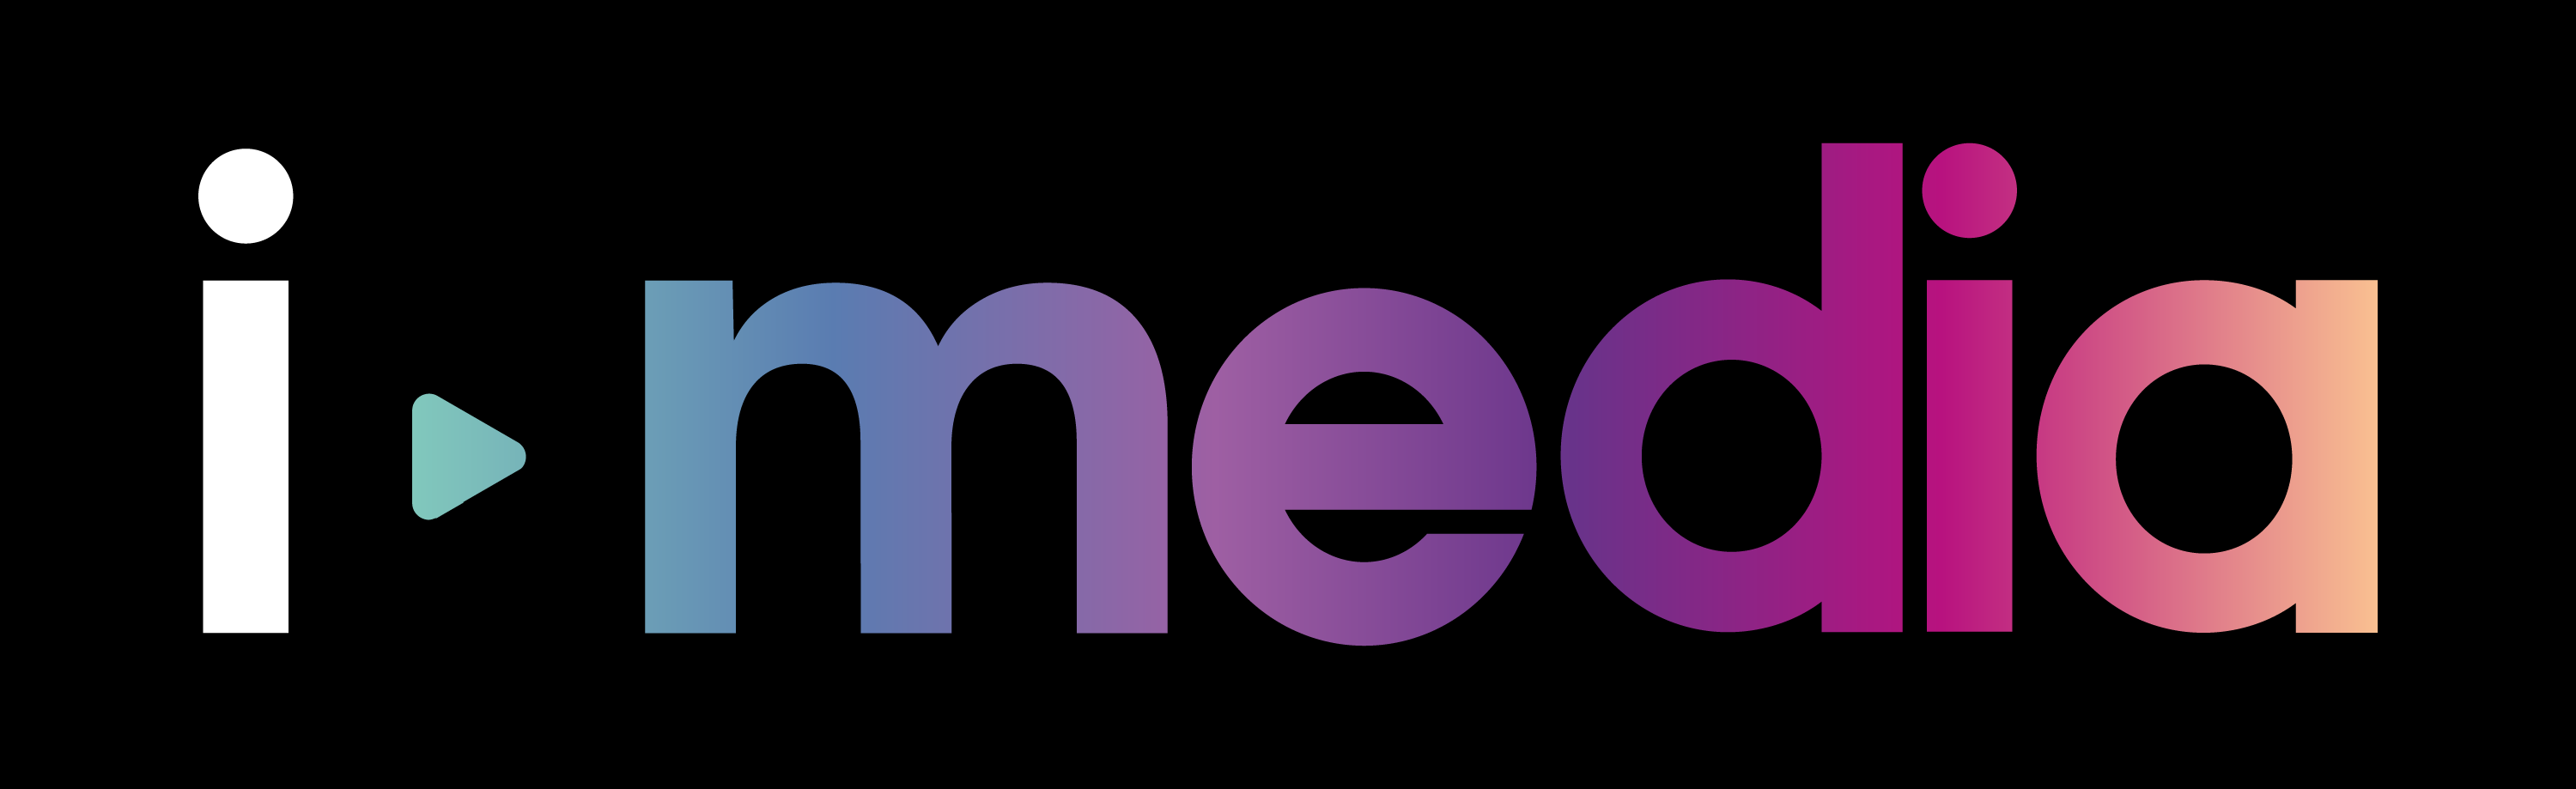 logo for i-media